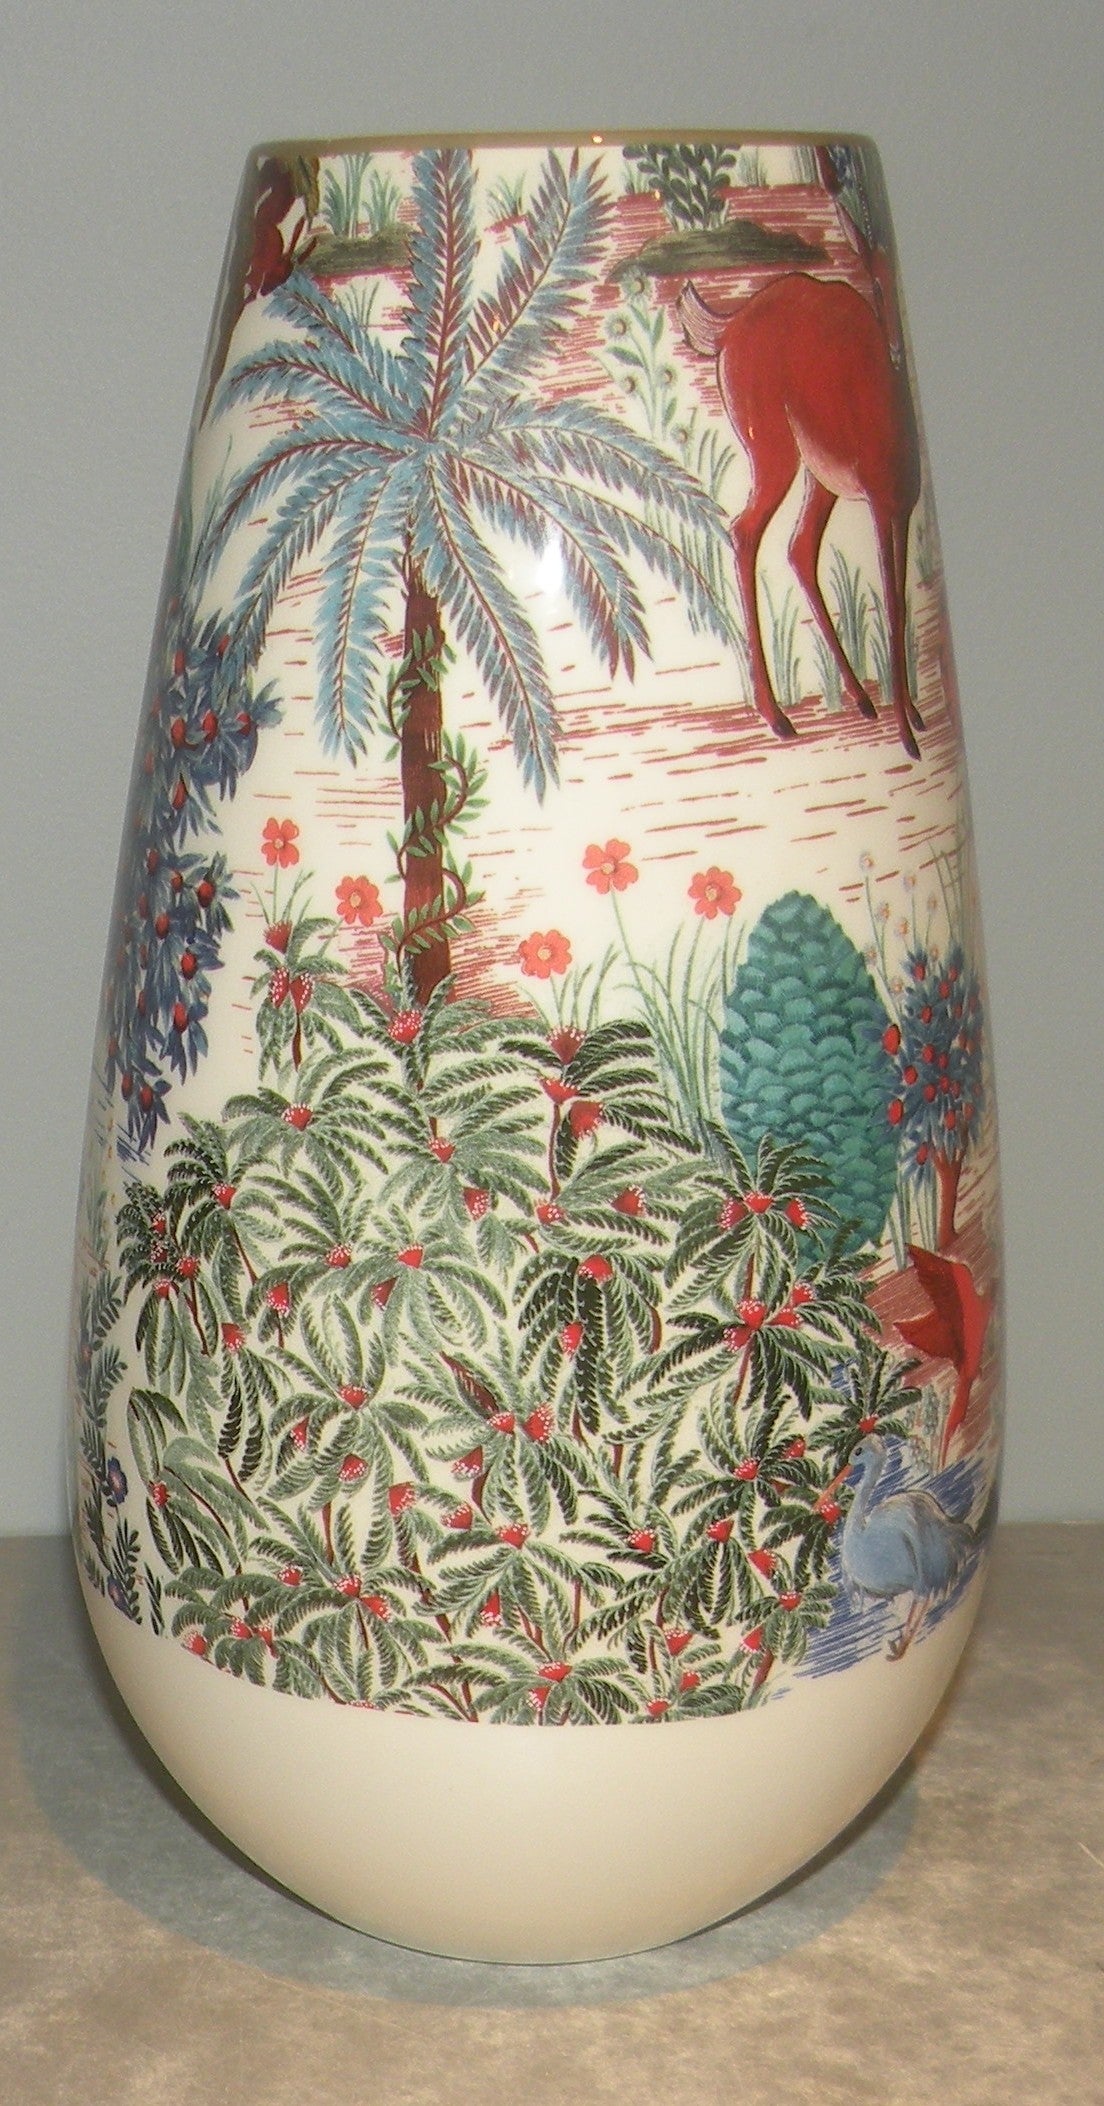 Bulbe Vase Number 4 Le Jardin du Palais